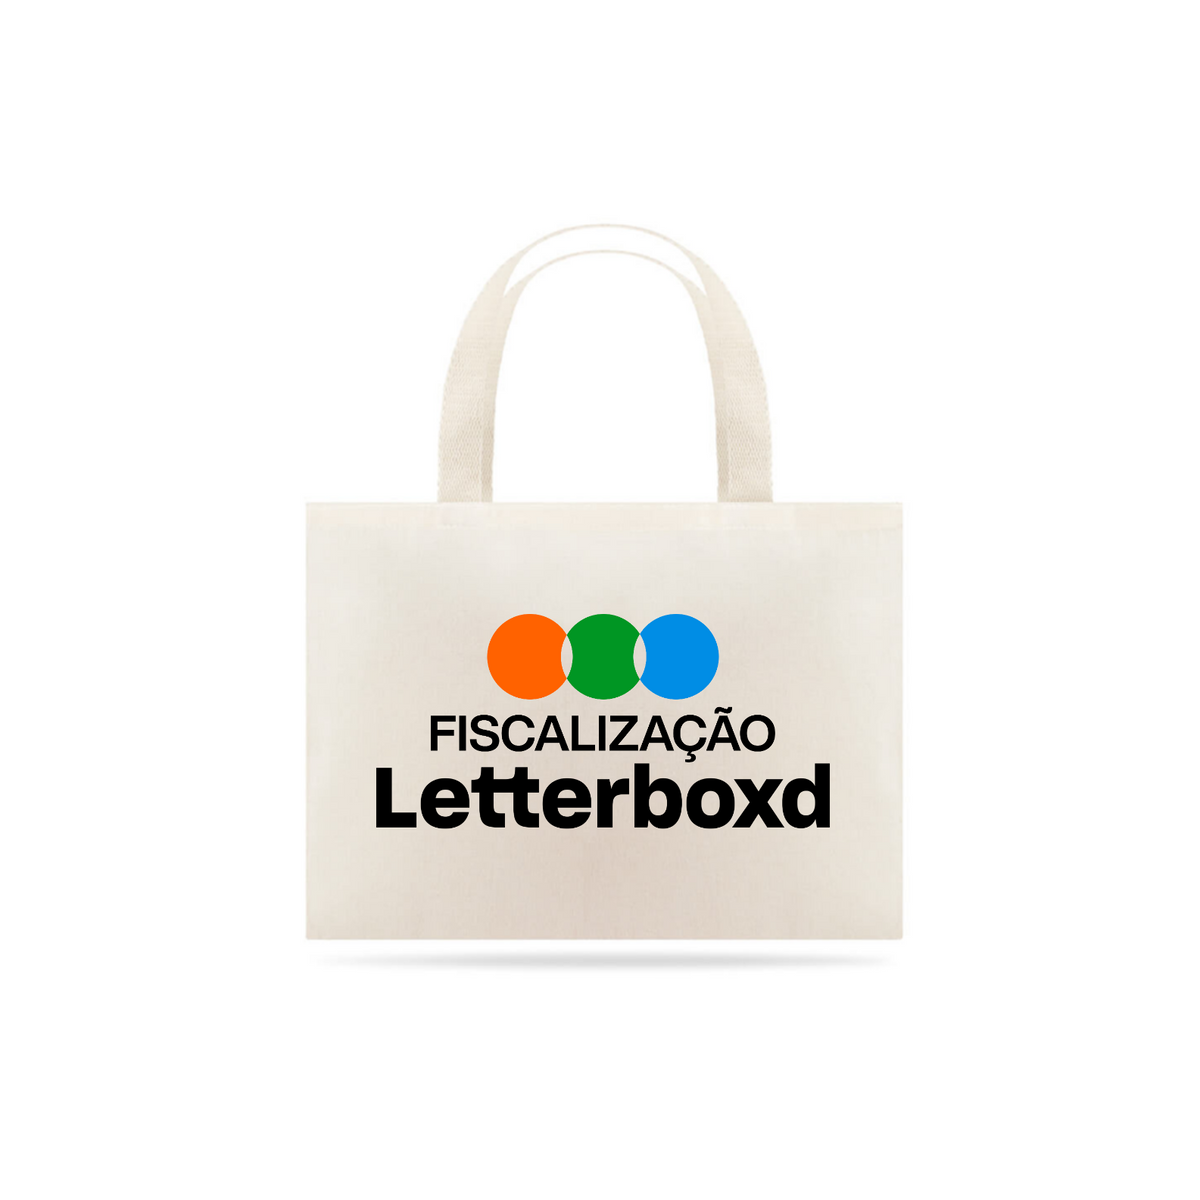 Nome do produto: LETTERBOXD